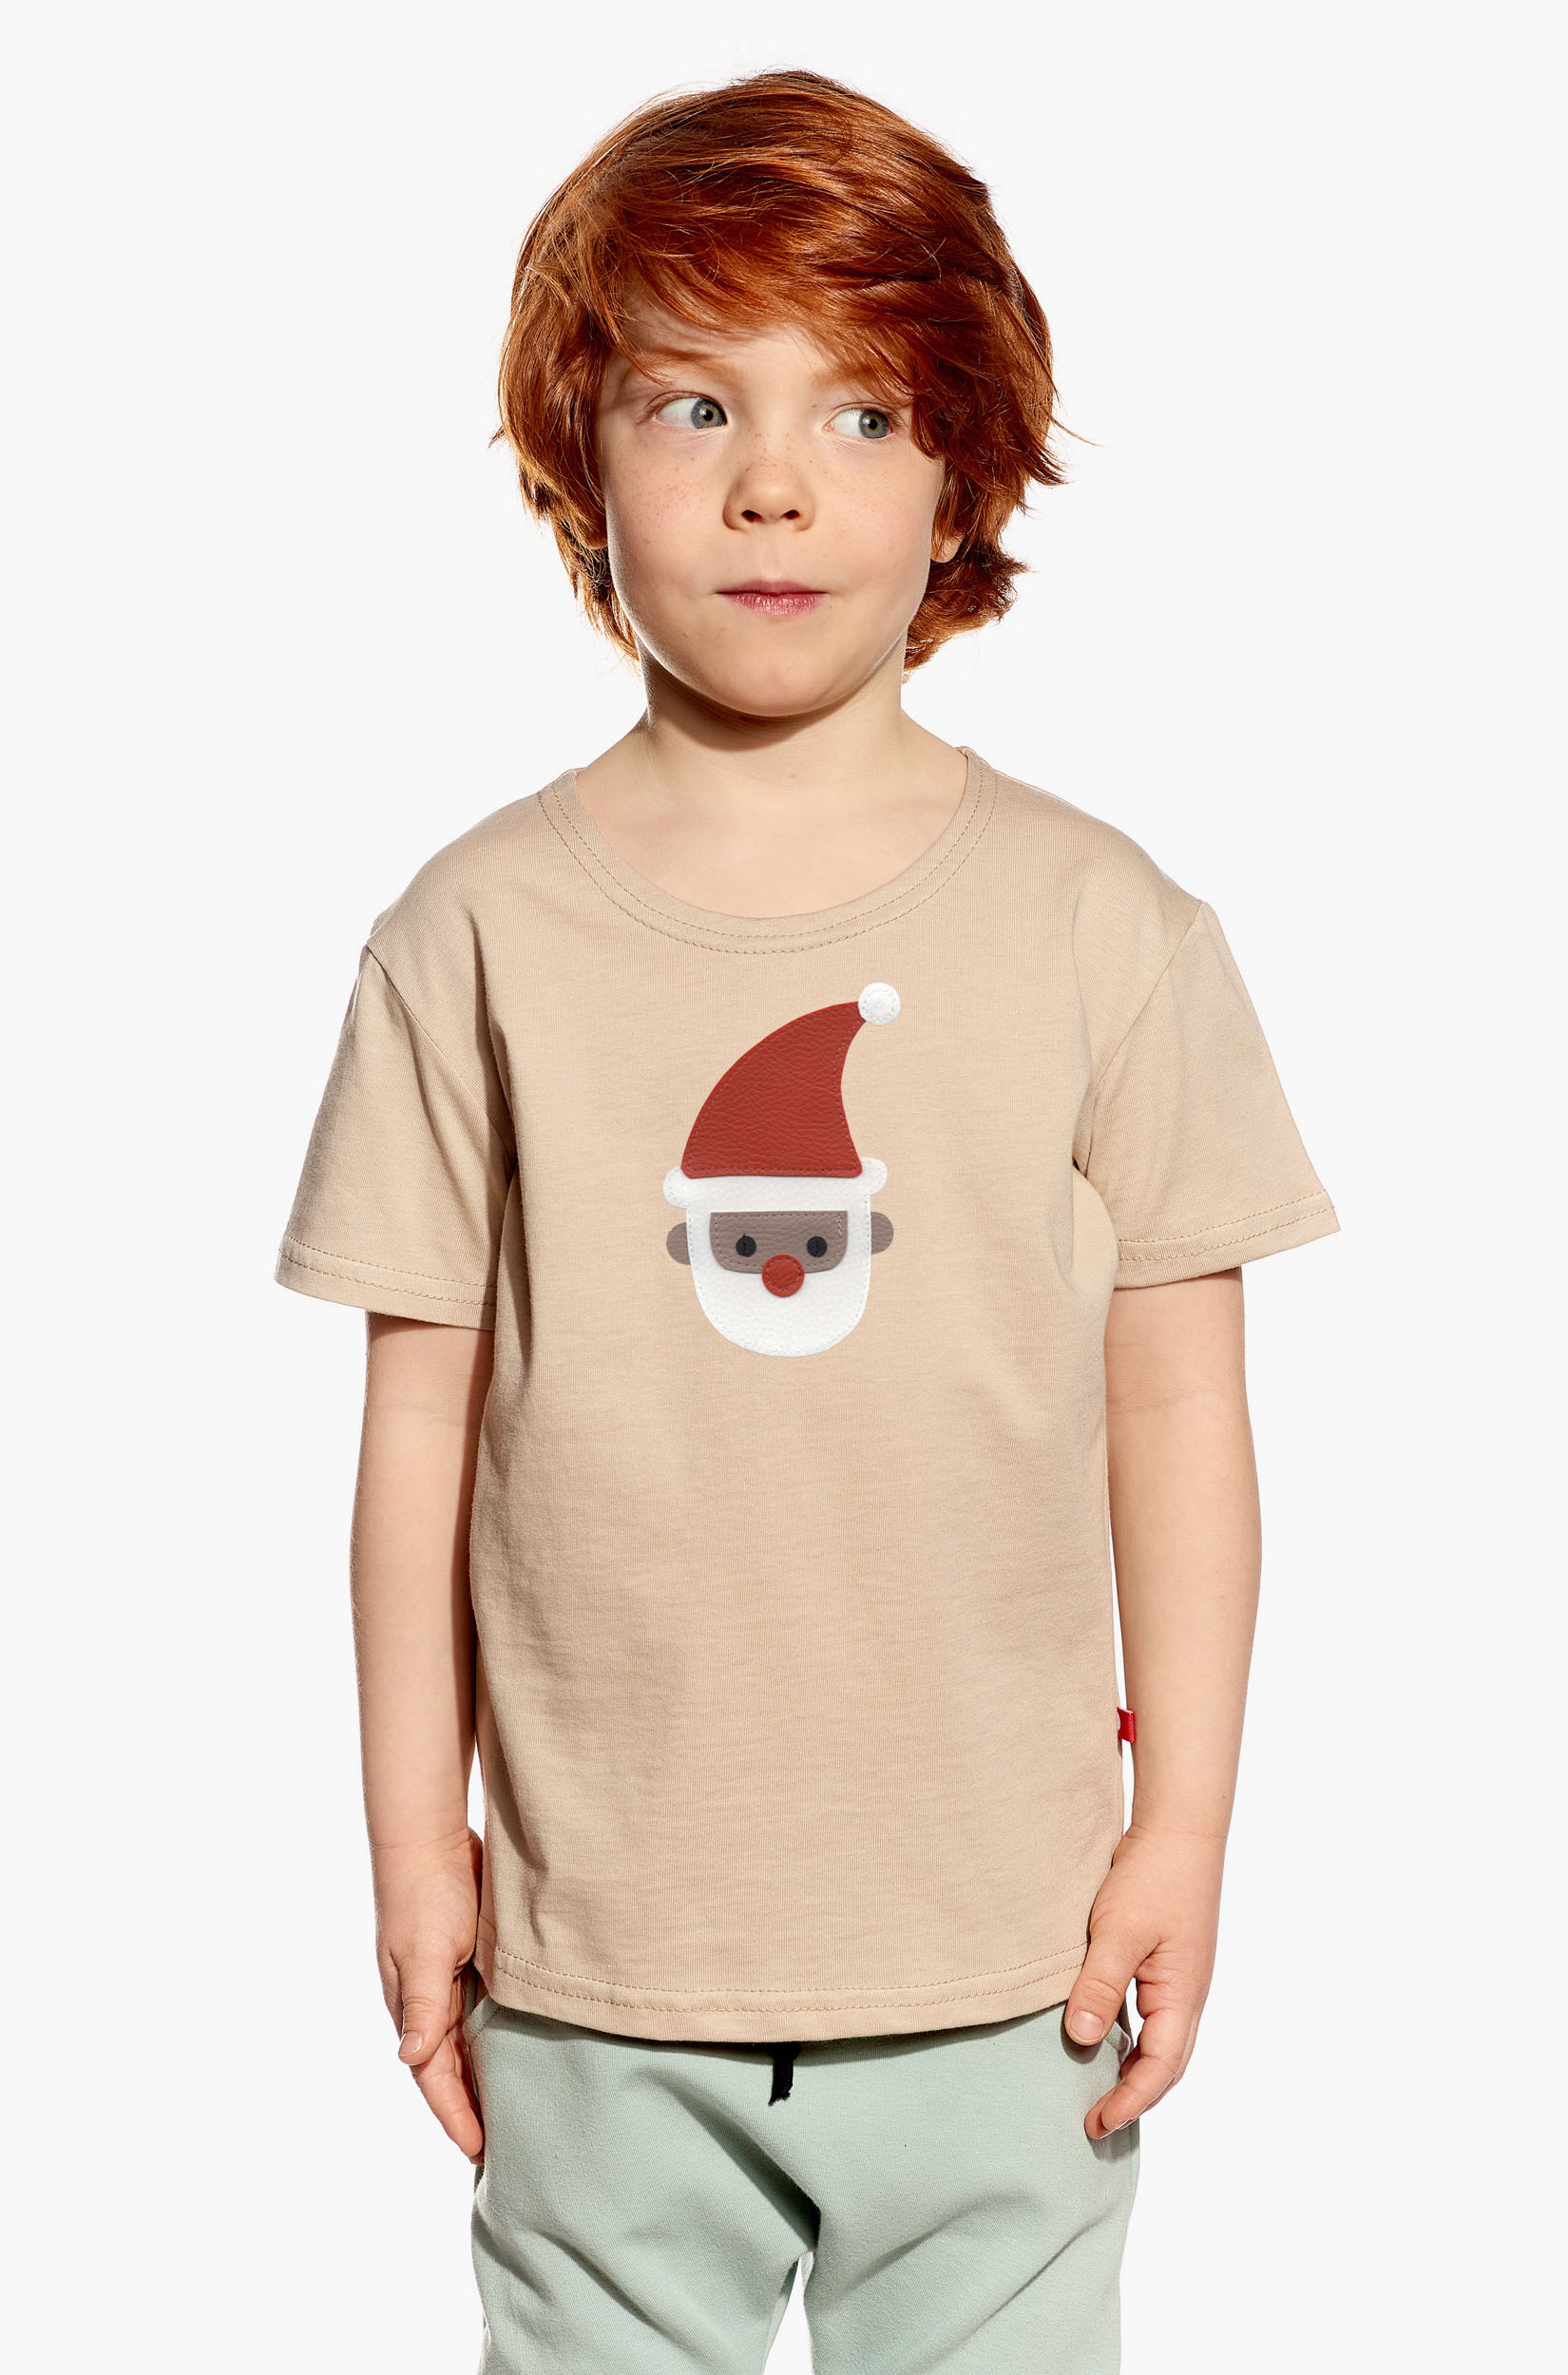 Shirt with Santa